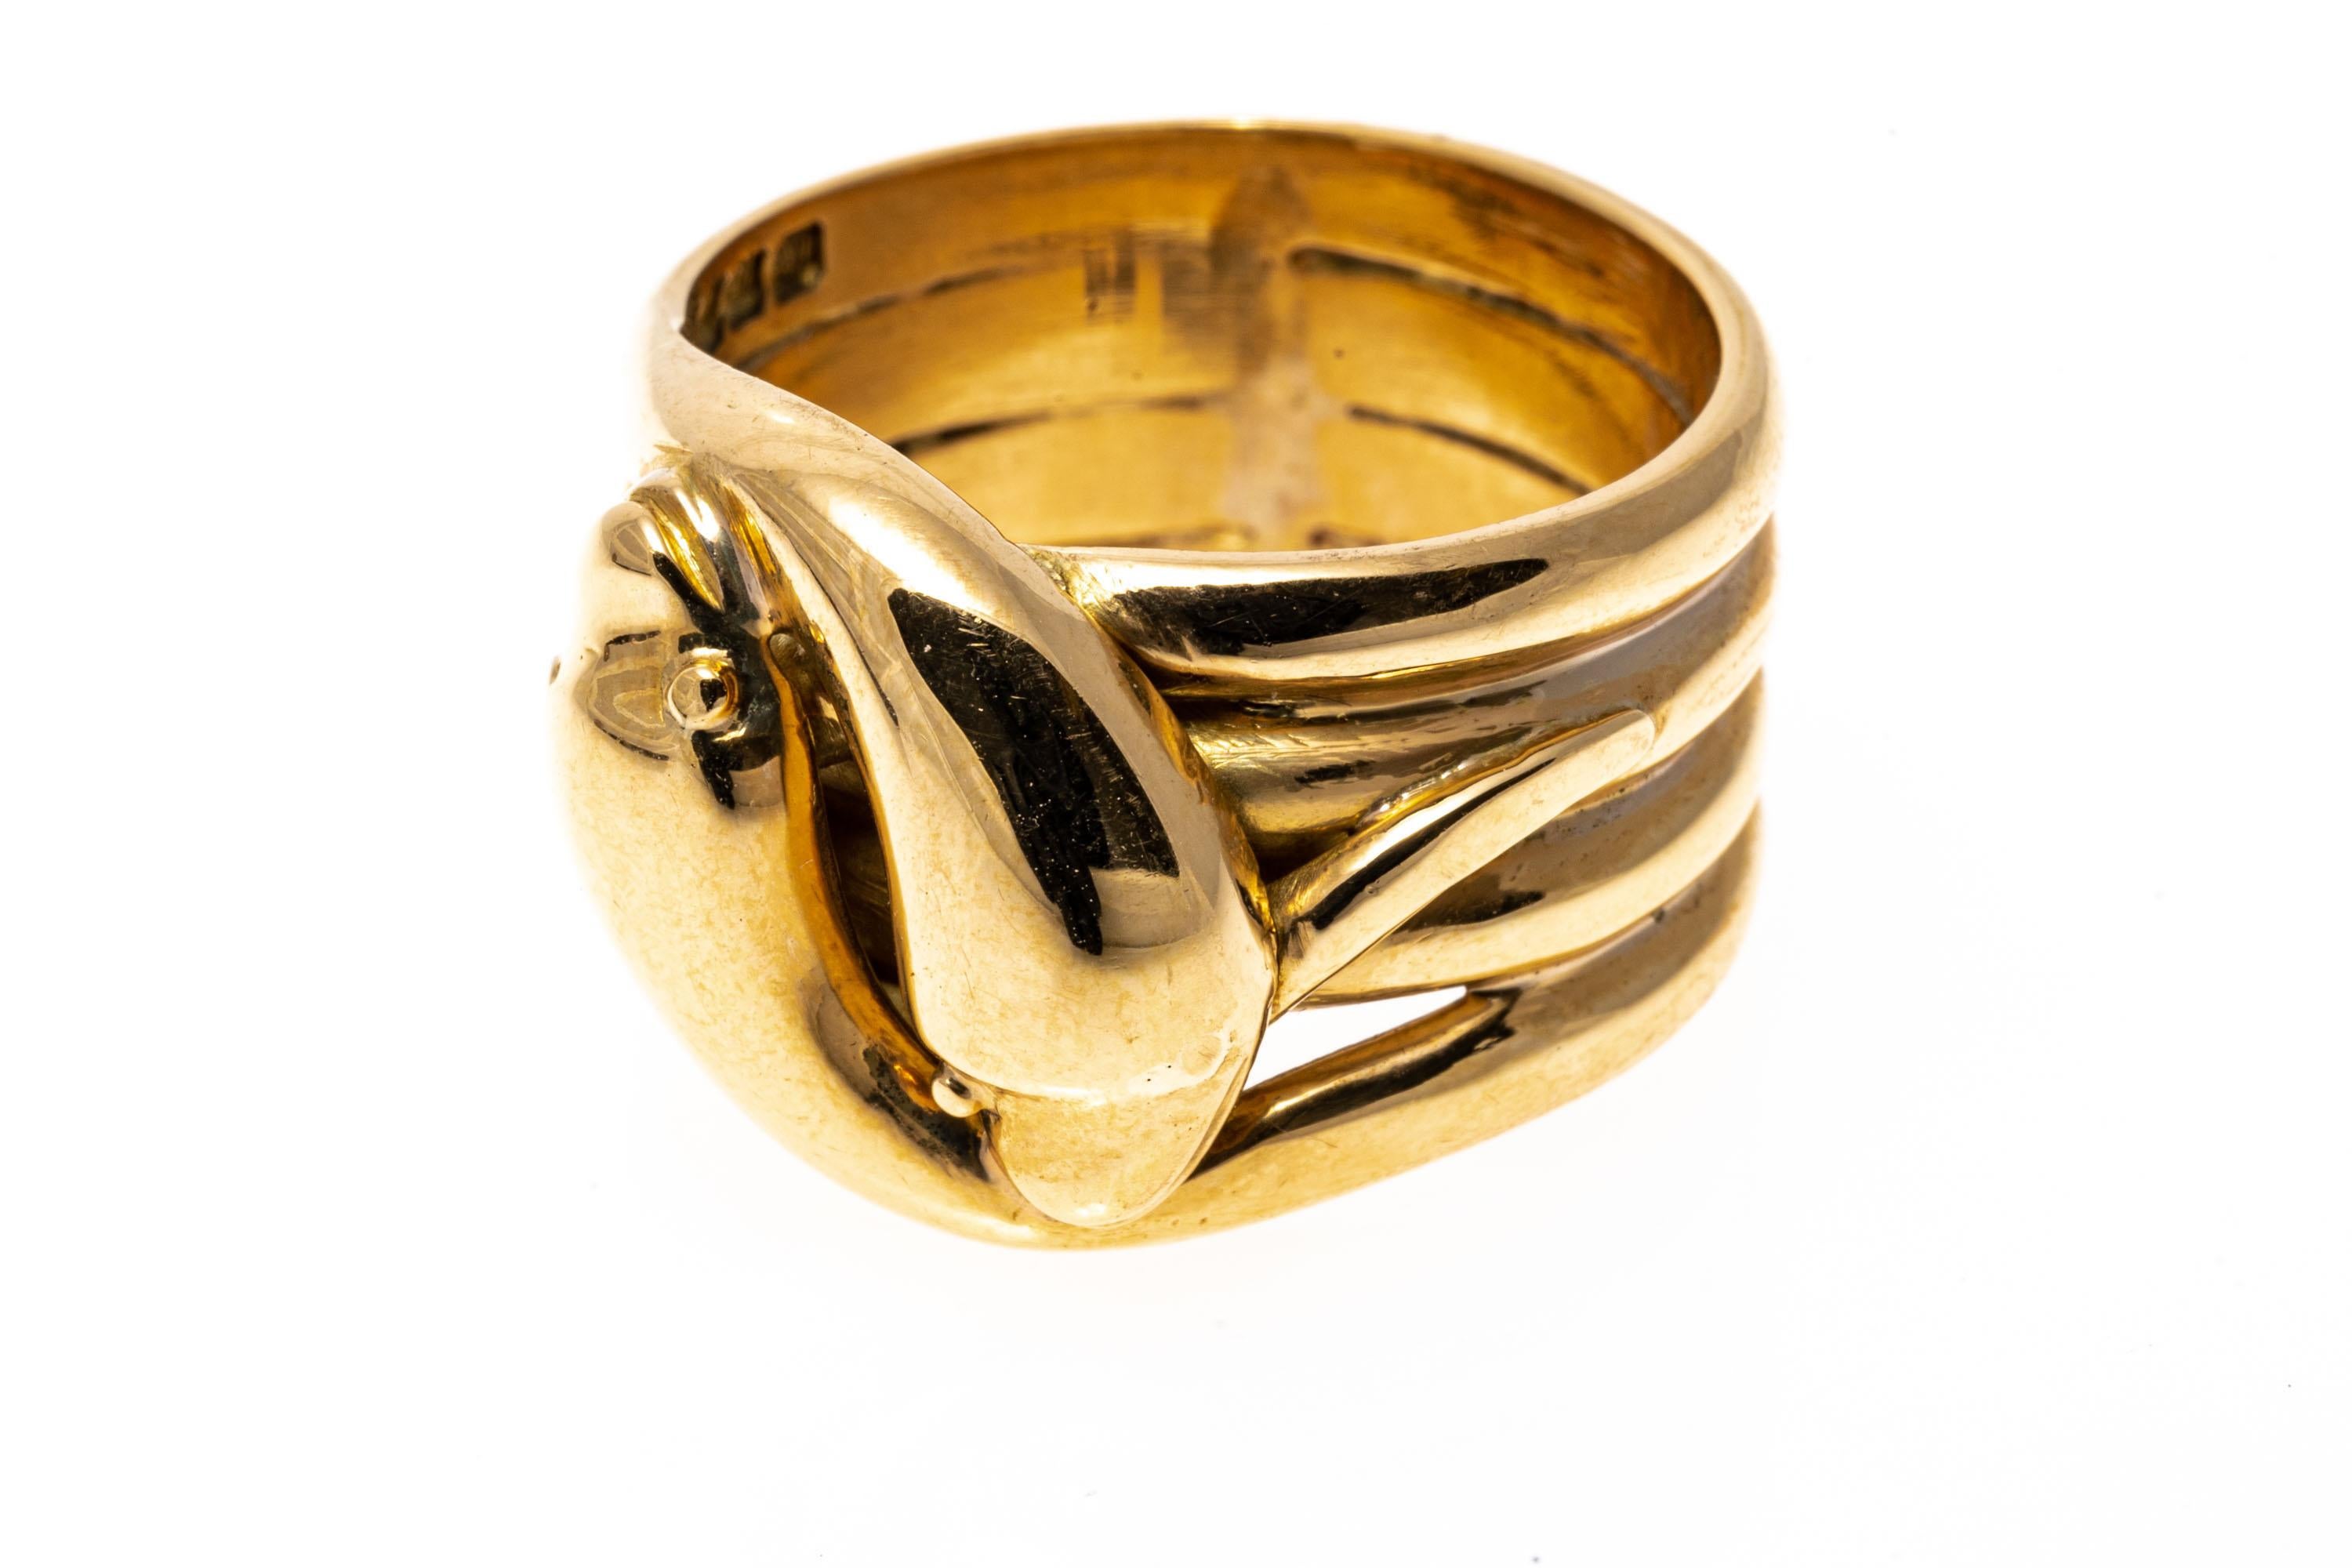 Ring aus 18k Gelbgold. Dieser auffällige, moderne, vierreihige Ring zeigt ein ineinander verschlungenes Schlangenmotiv mit zwei sich umgehenden Schlangen und einem hochglanzpolierten Gehäuse.
Markierungen: 18k
Abmessungen: 9/16